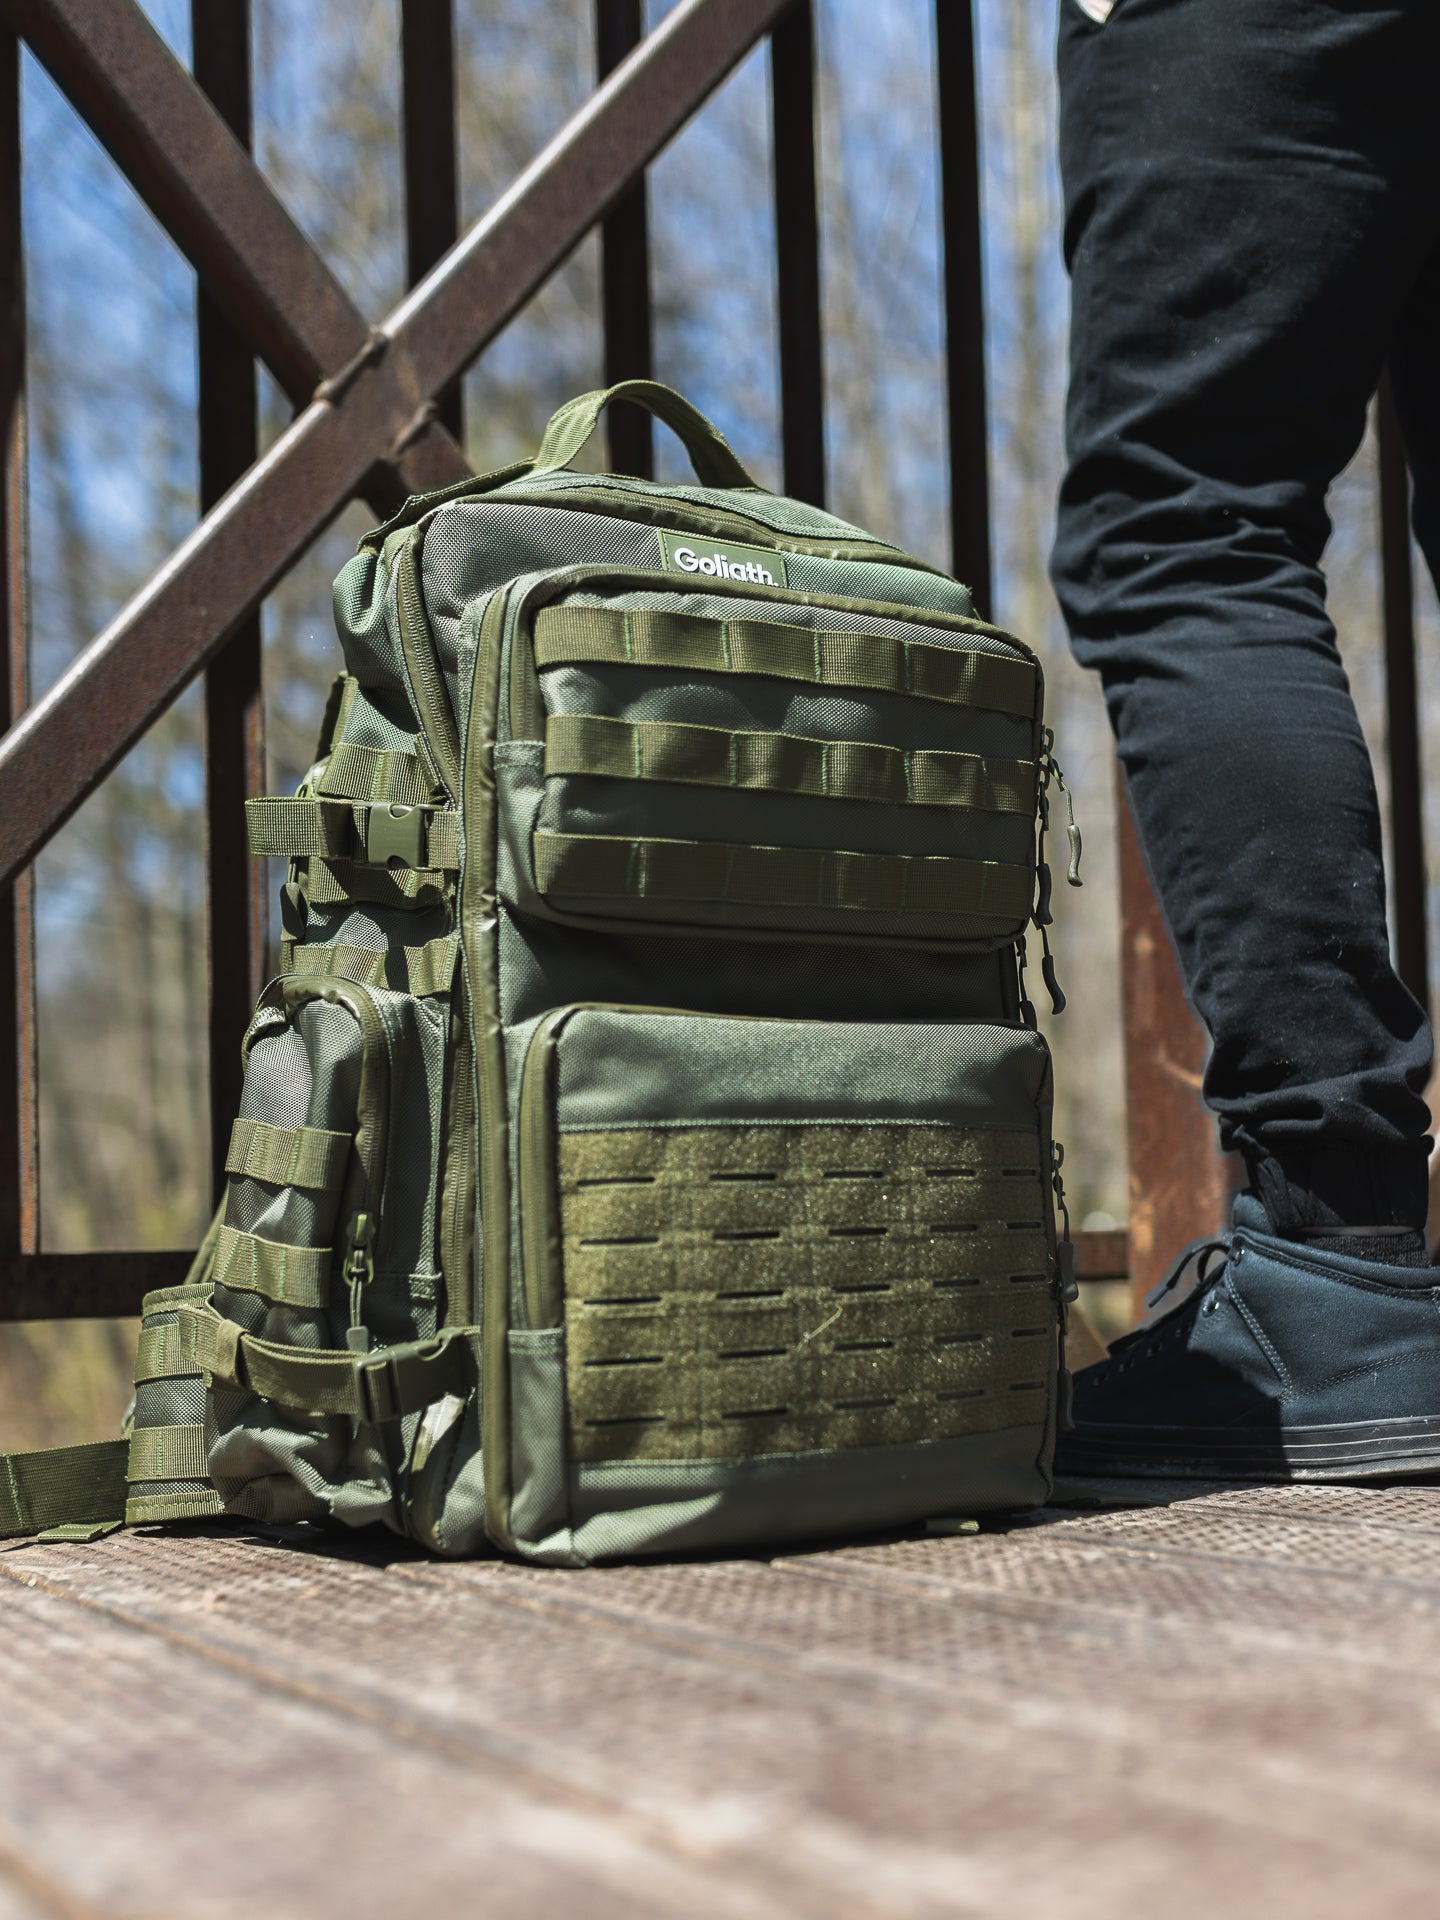 Green goliath backpack